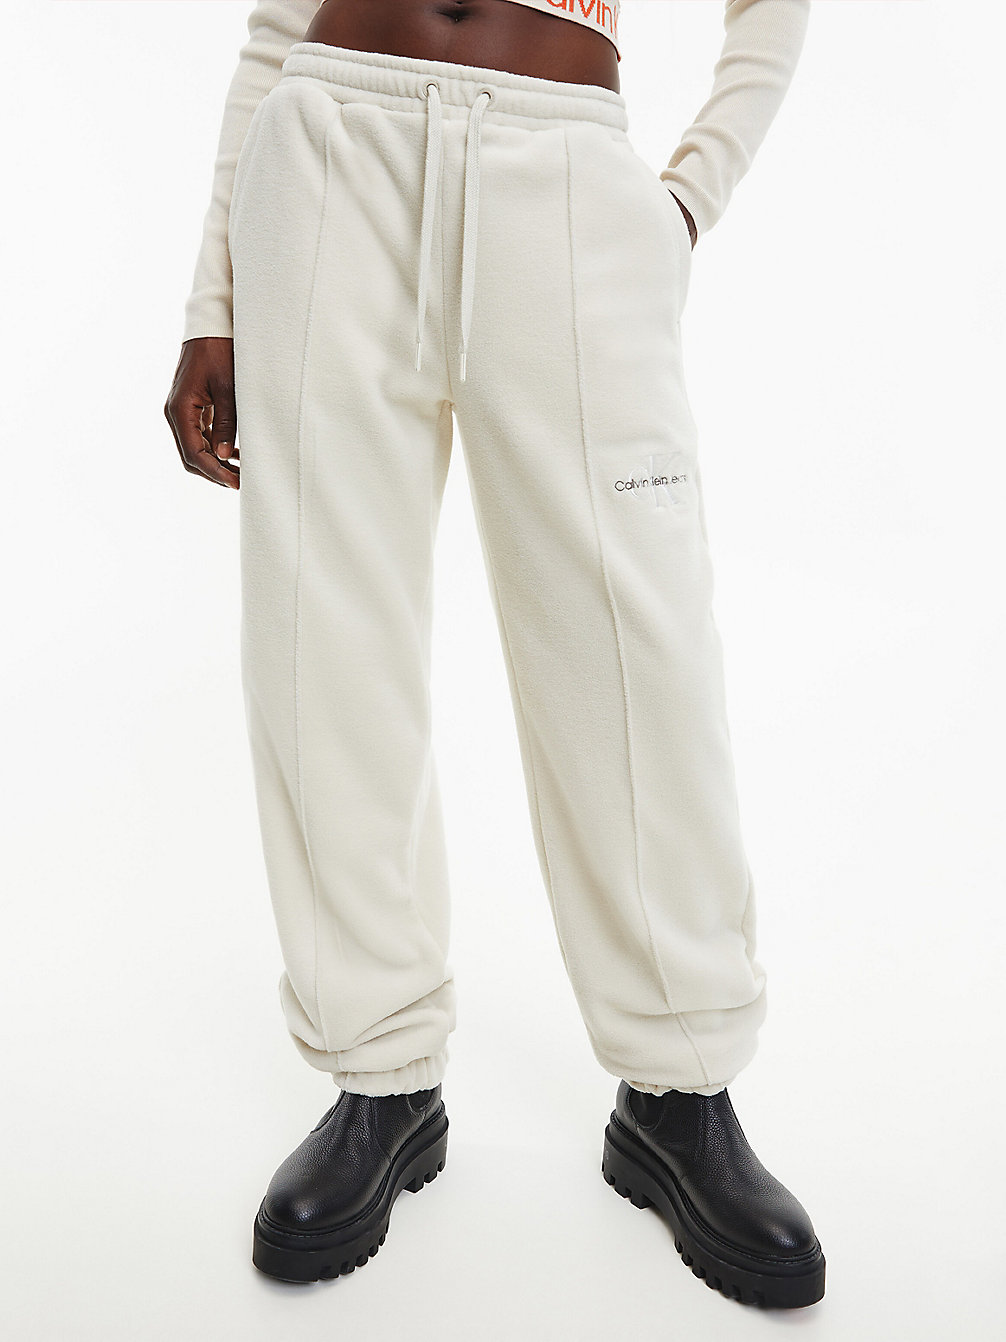 EGGSHELL > Spodnie Dresowe Z Polaru Z Recyklingu > undefined Kobiety - Calvin Klein